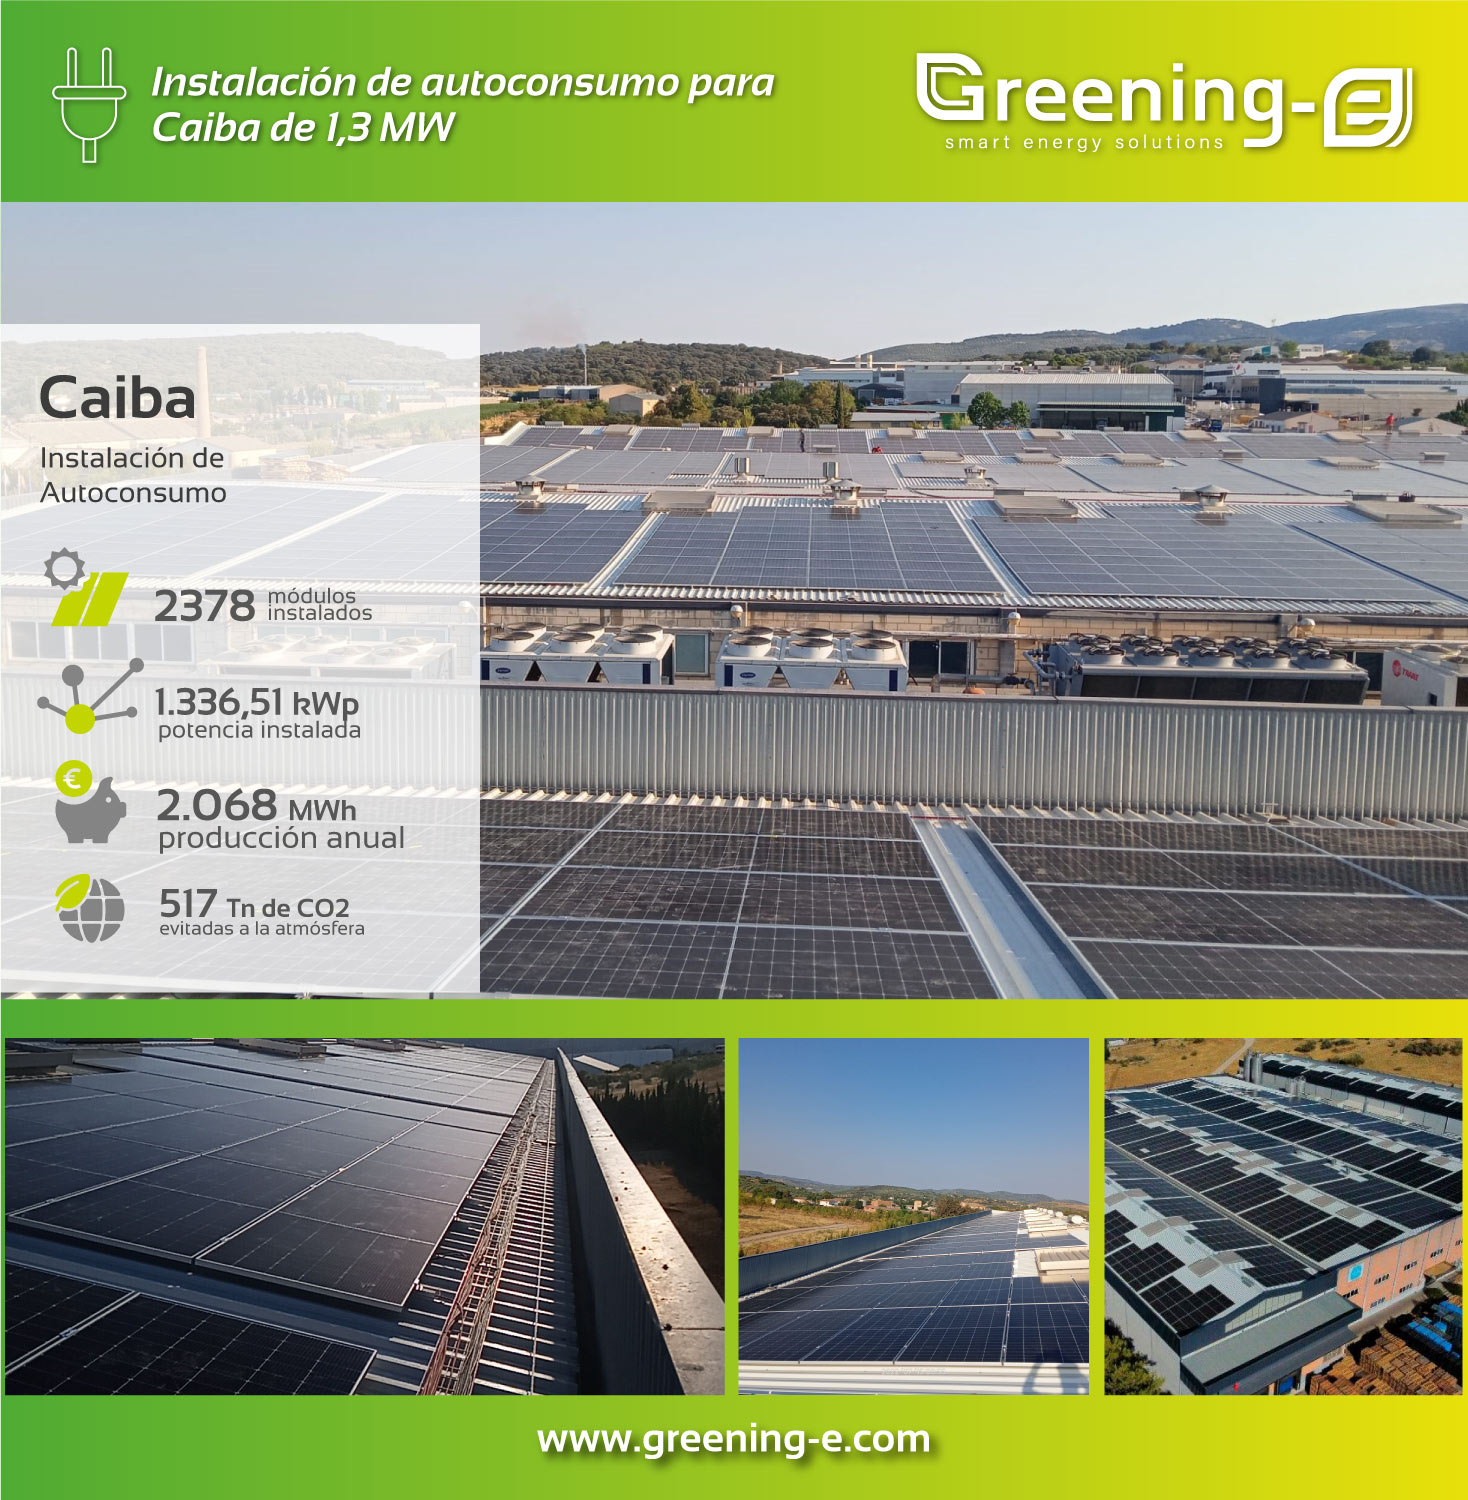 Proyectos Greening-e: Instalación de autoconsumo para Caiba de 1,3 MW